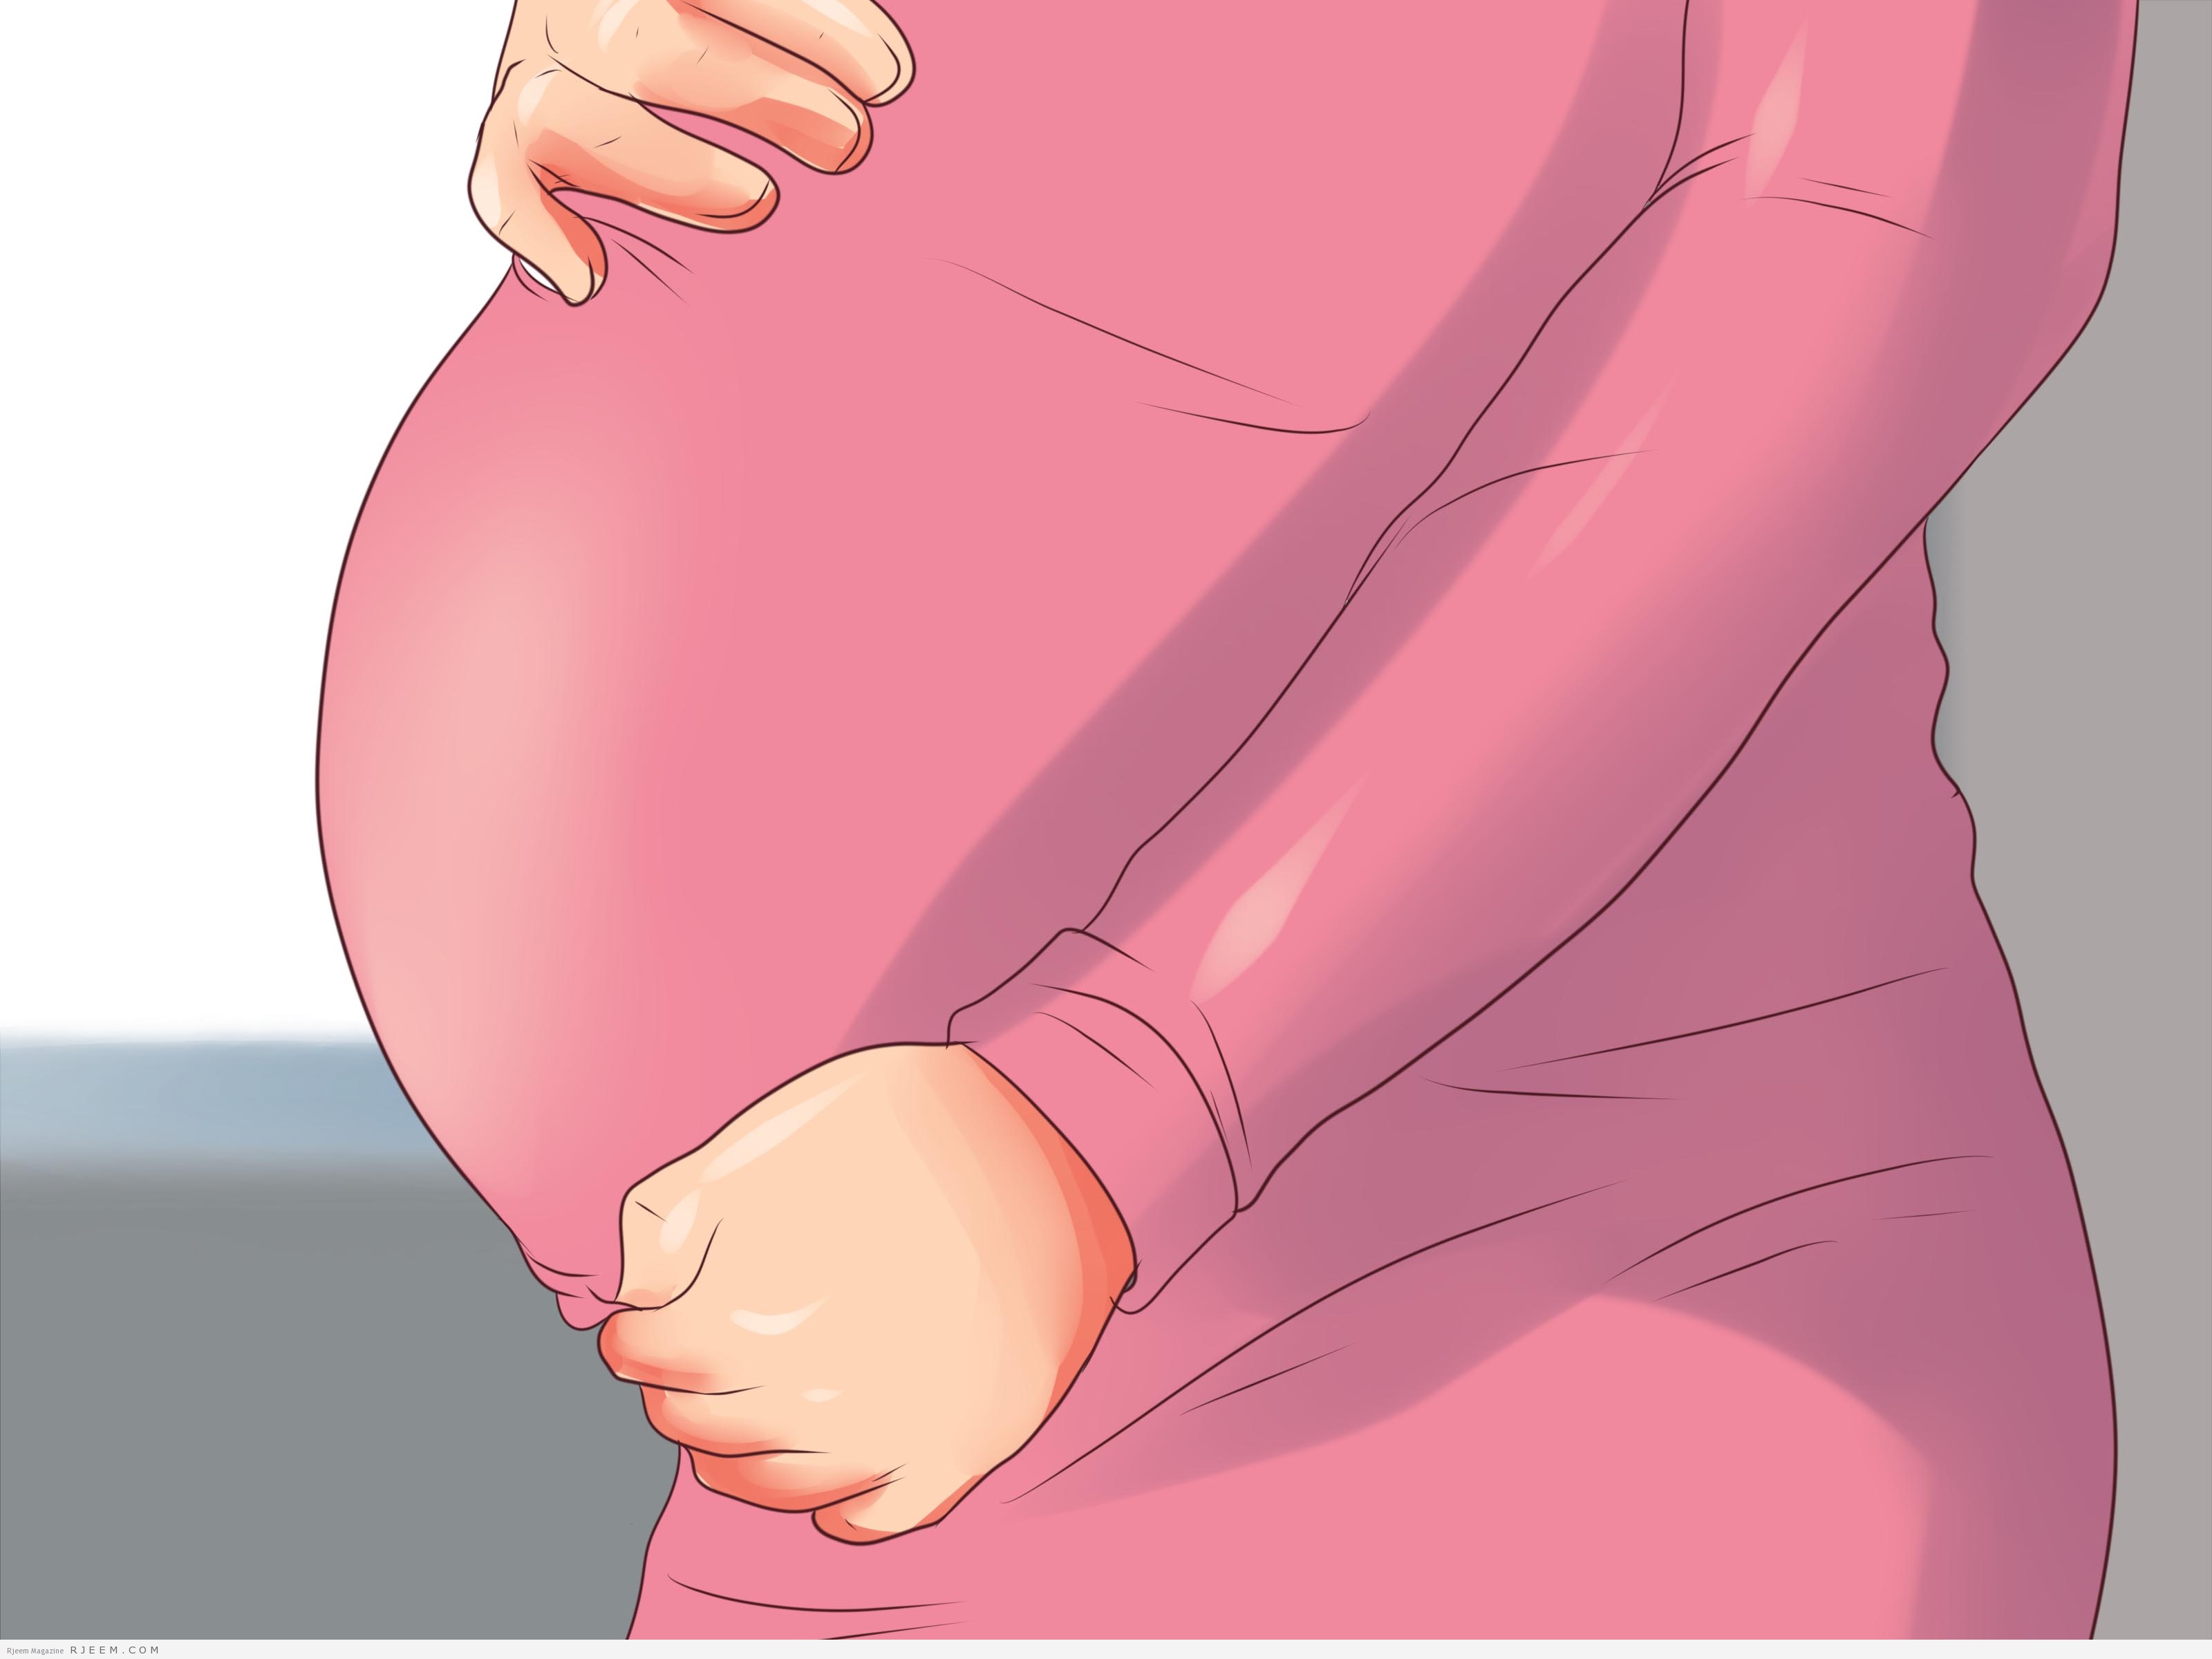 التخلص من انتفاخ البطن اثناء الحمل 